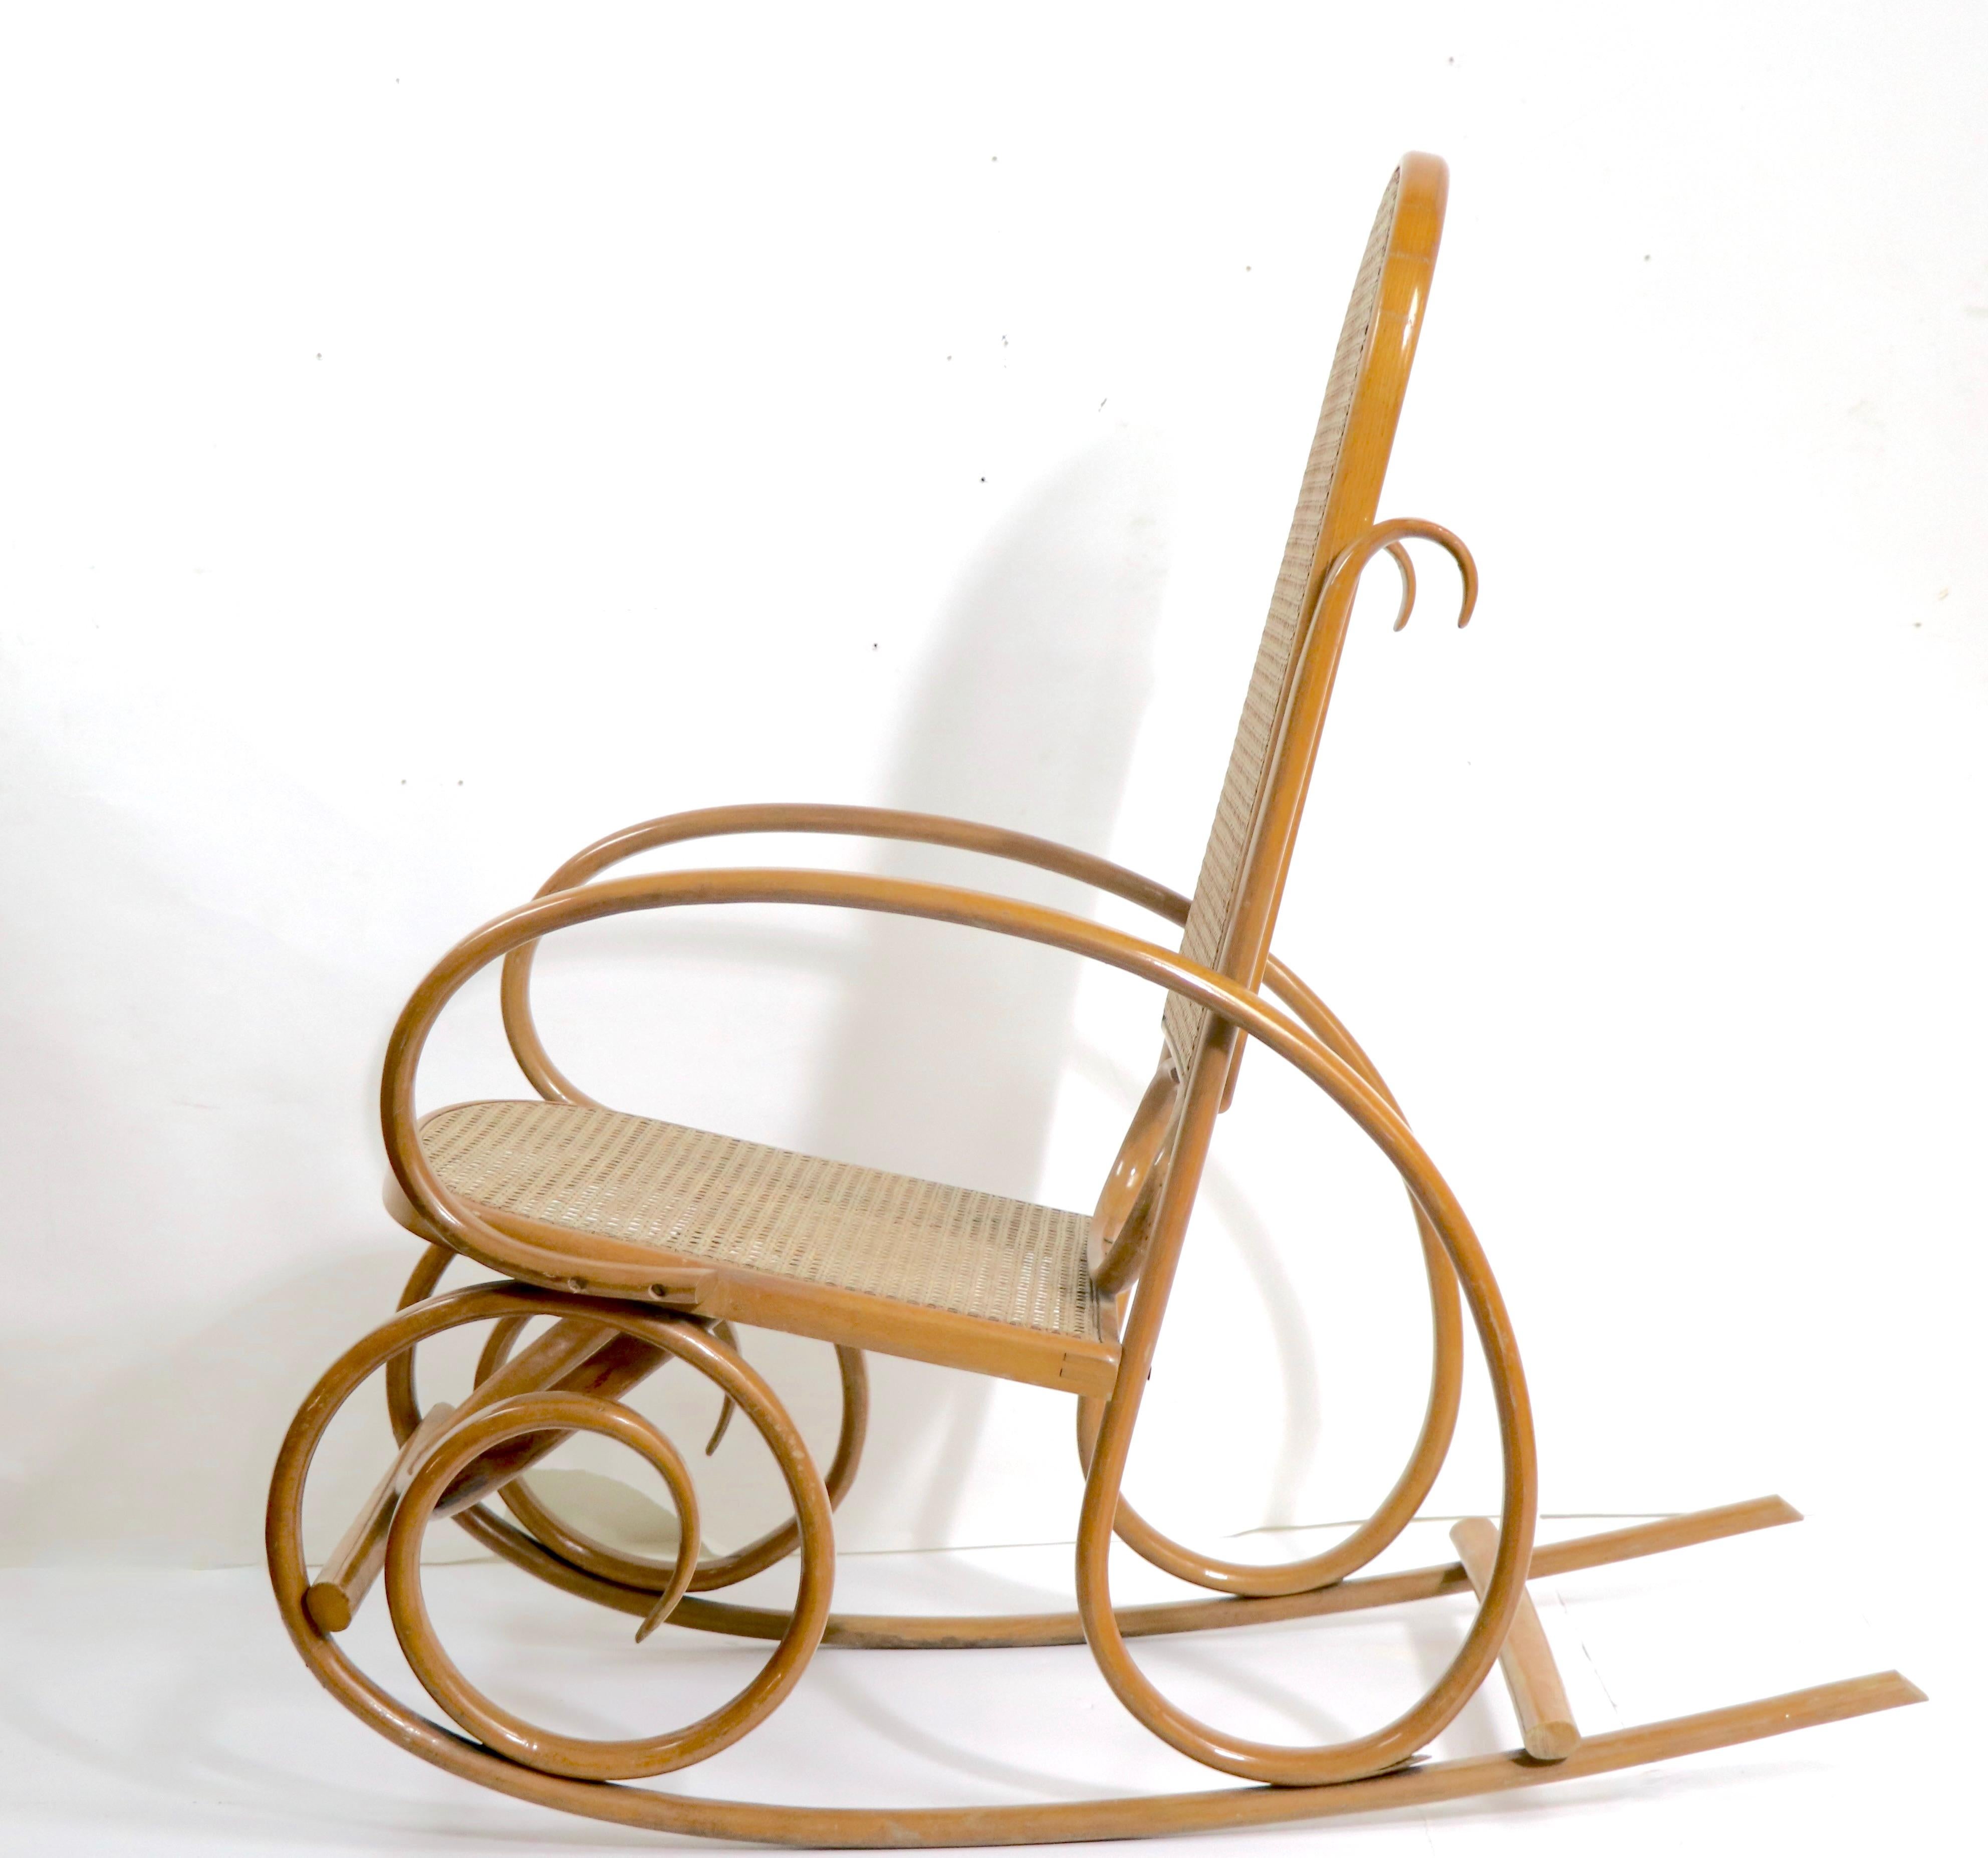 Ungewöhnlicher Schaukelstuhl aus Bugholz und Rohr, im Stil des Wiener Secessionismus, wahrscheinlich Mitte des 20. Jahrhunderts, Thonet - made in USA, unsigniert. Der Stuhl ist etwas kleiner als die häufig auf dem Markt anzutreffende Version. Dieses